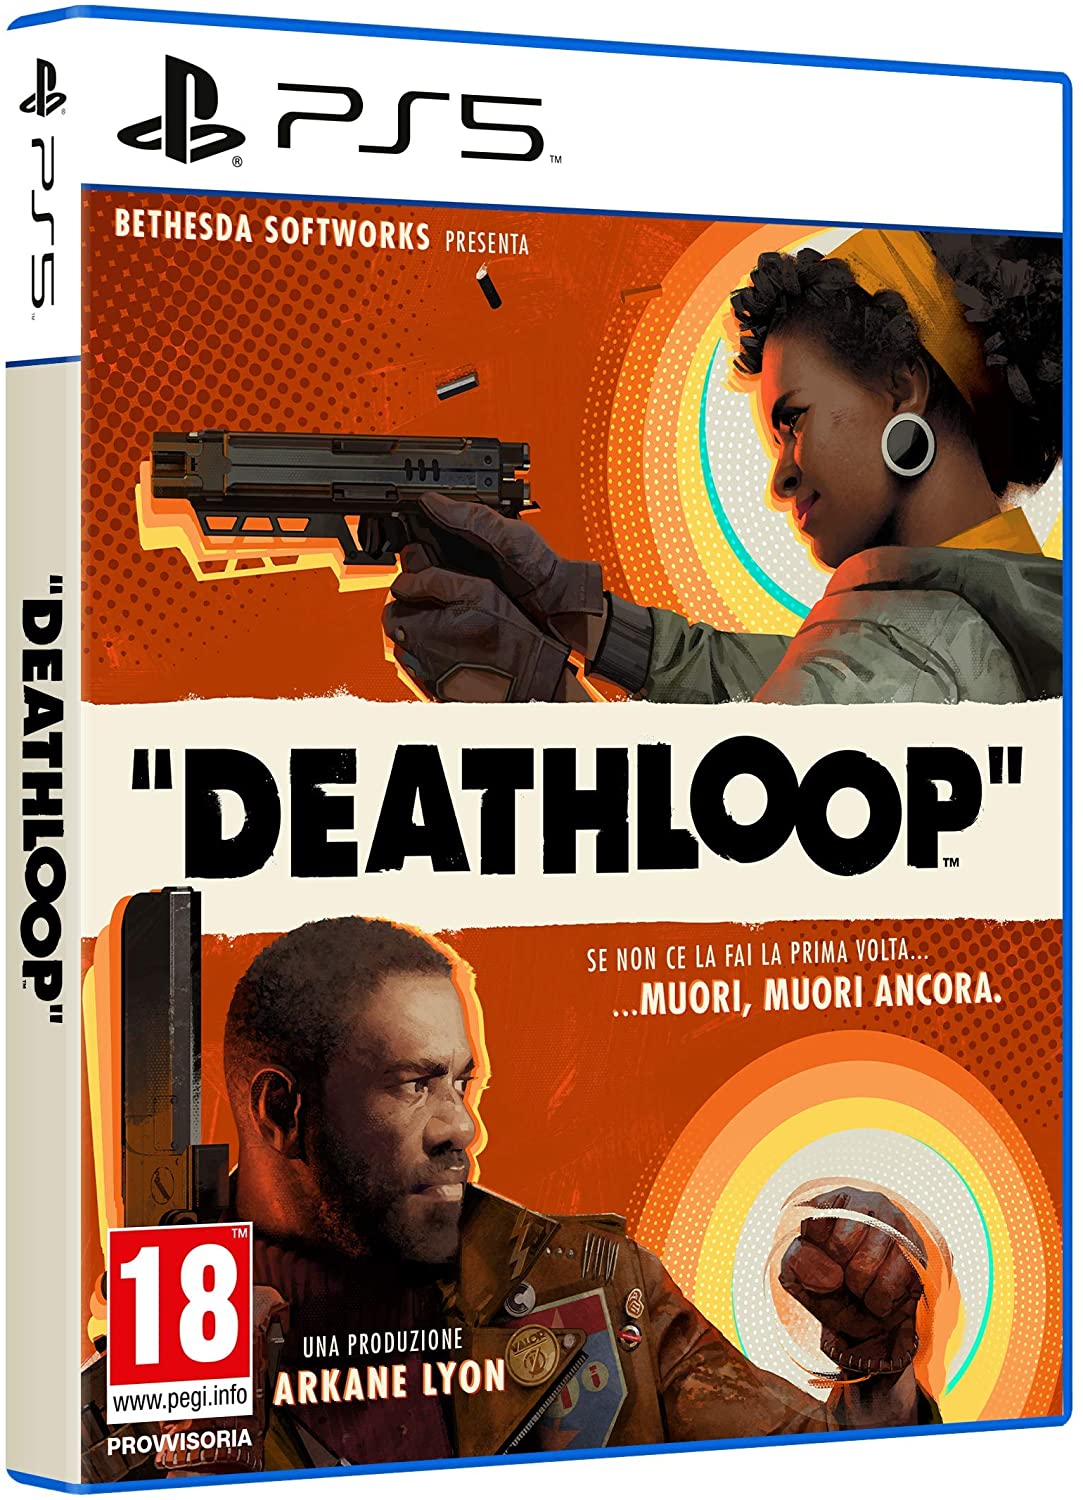 
                                    
                                Deathloop, la recensione: spezza il loop temporale nel nuovo gioco per PS5 e PC